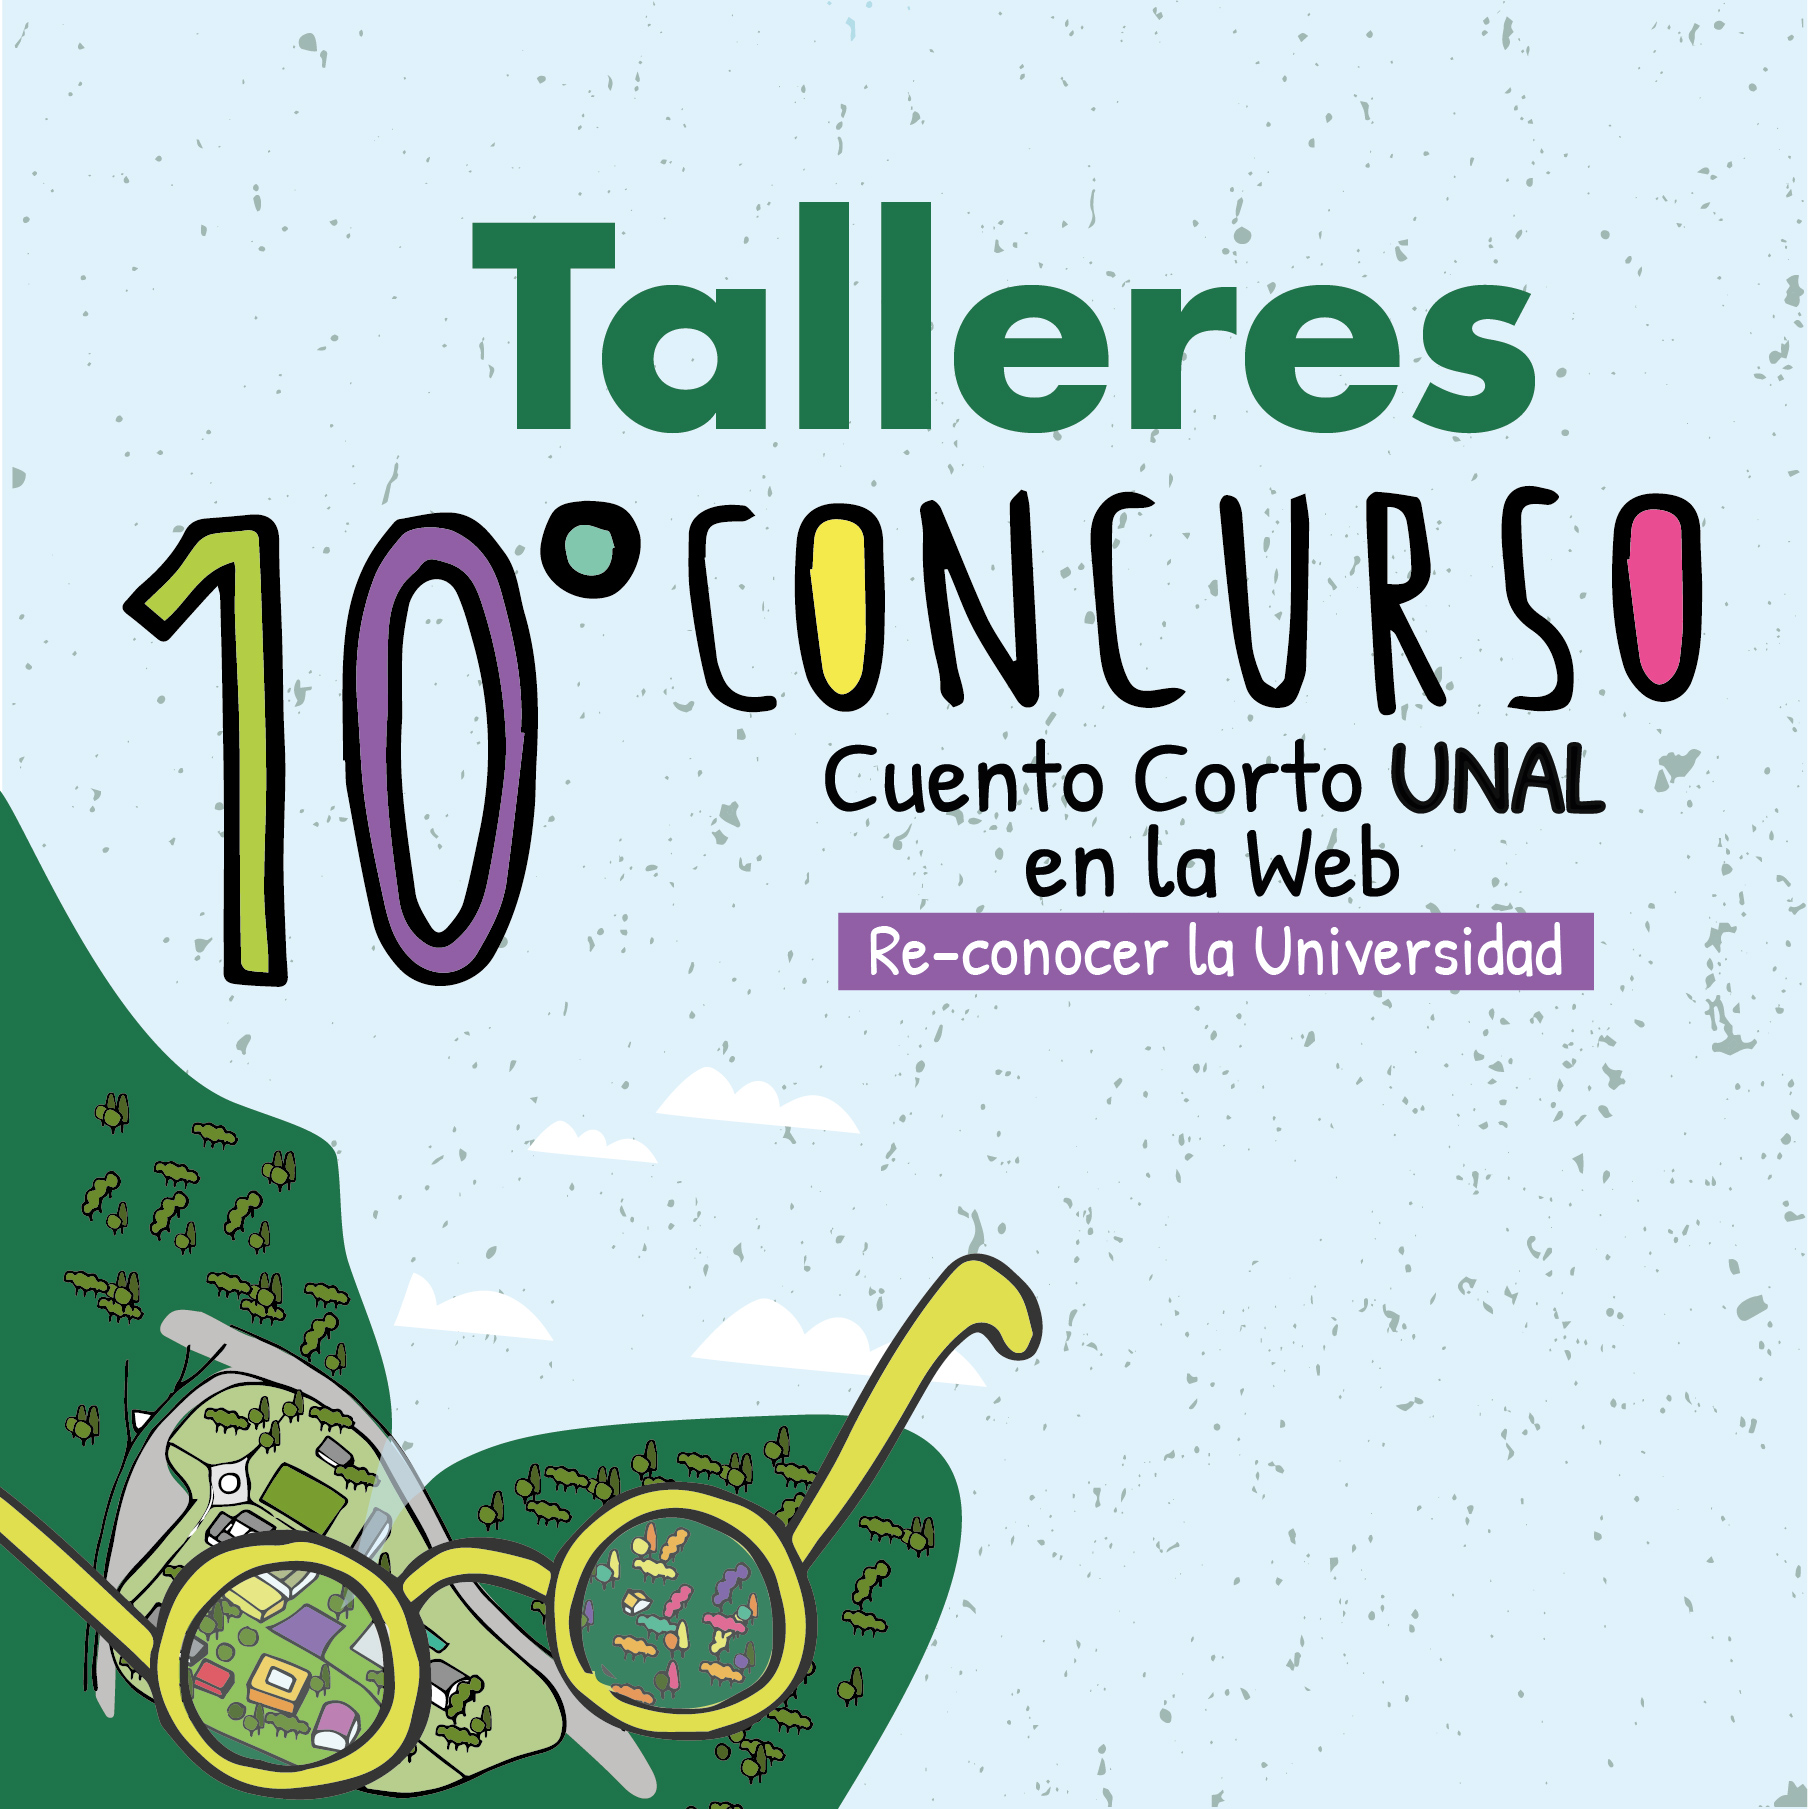 10ConcursoDeCuentoCorto 09